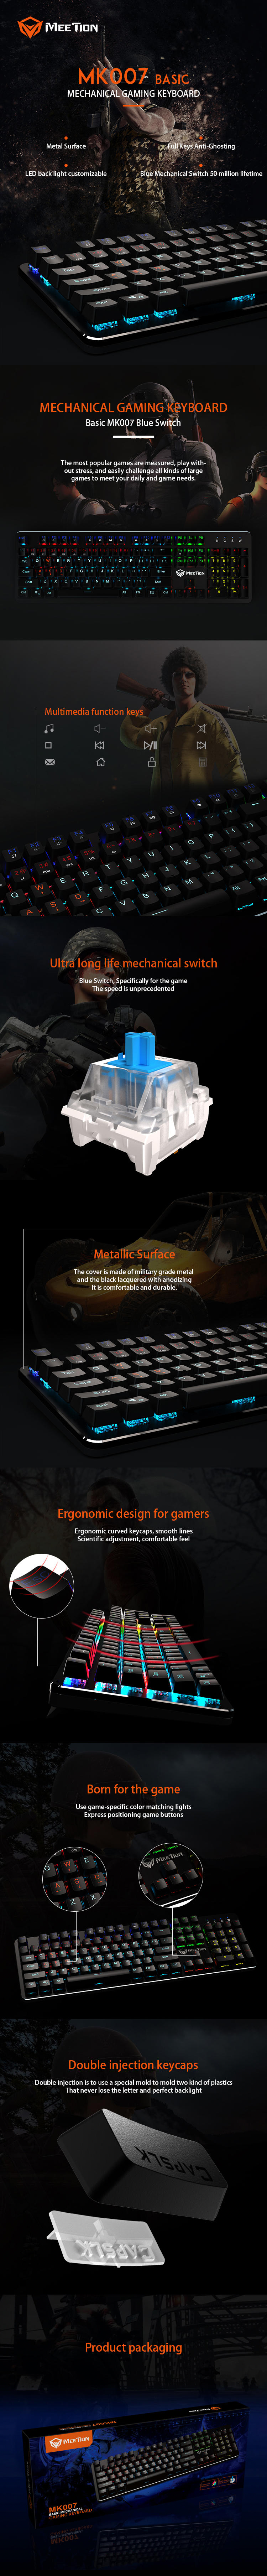 Meetion bulk purchase ergonomic gaming keyboard retailer-1